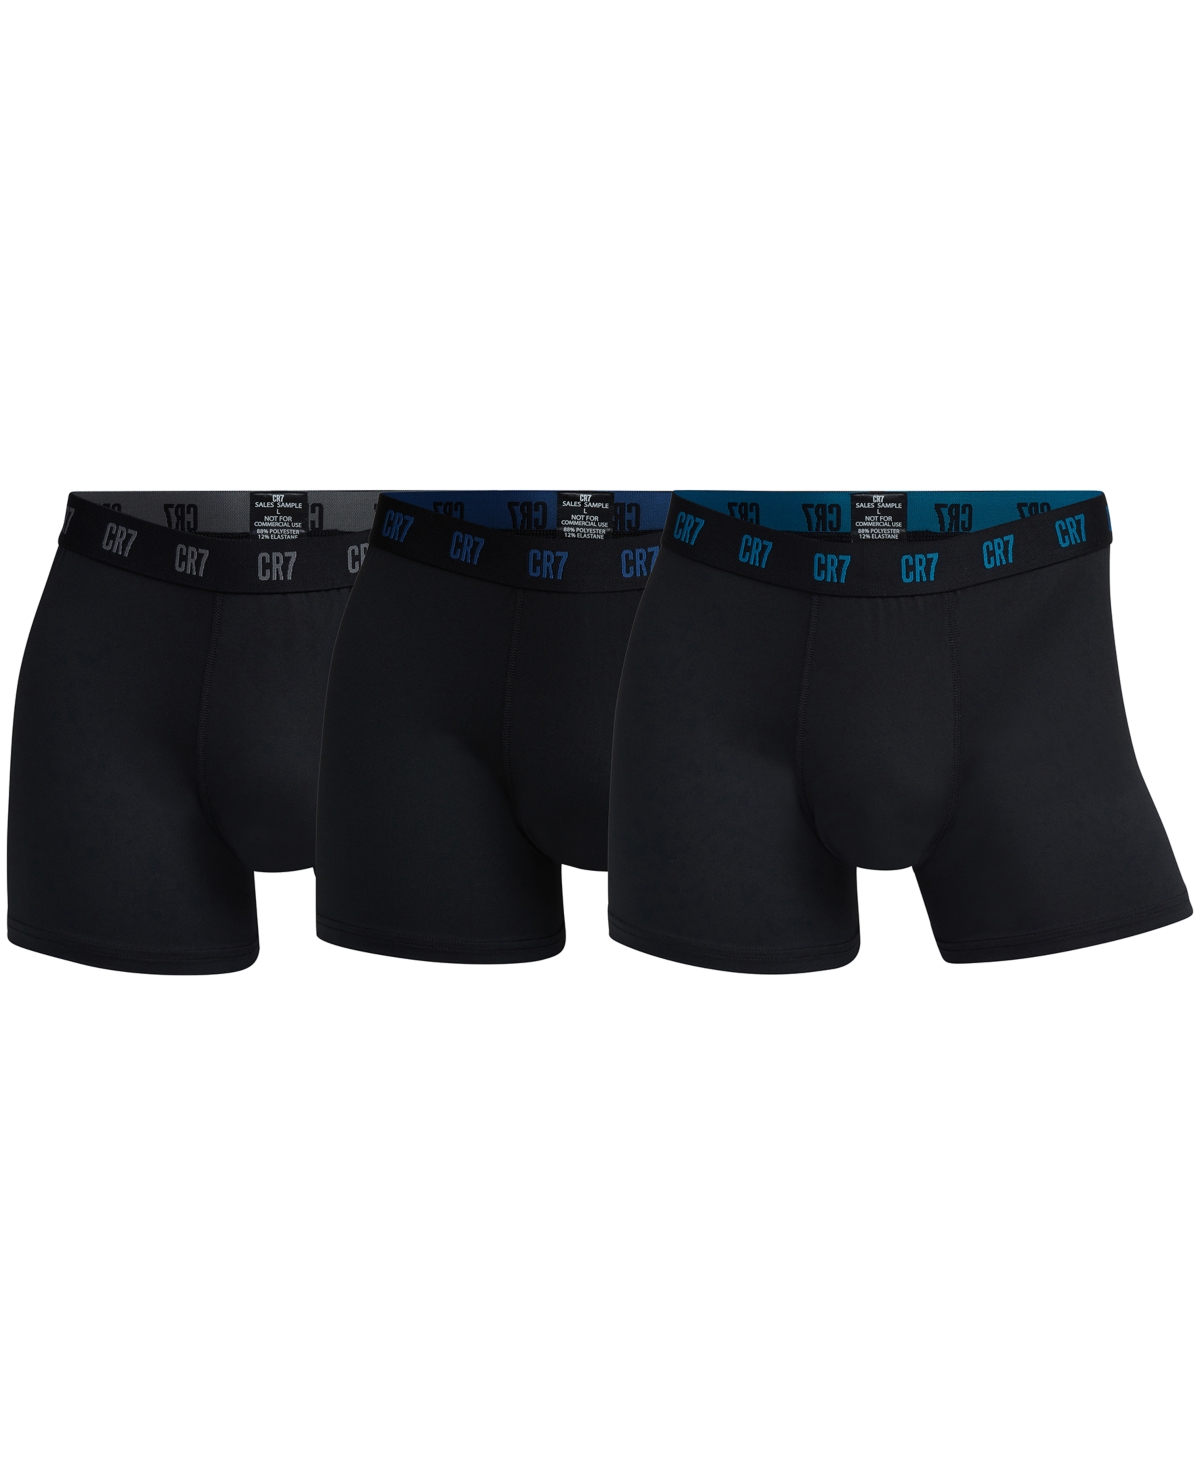 Men's Microfiber Blend Comfort Waistband Trunks, Pack of 3 - Black